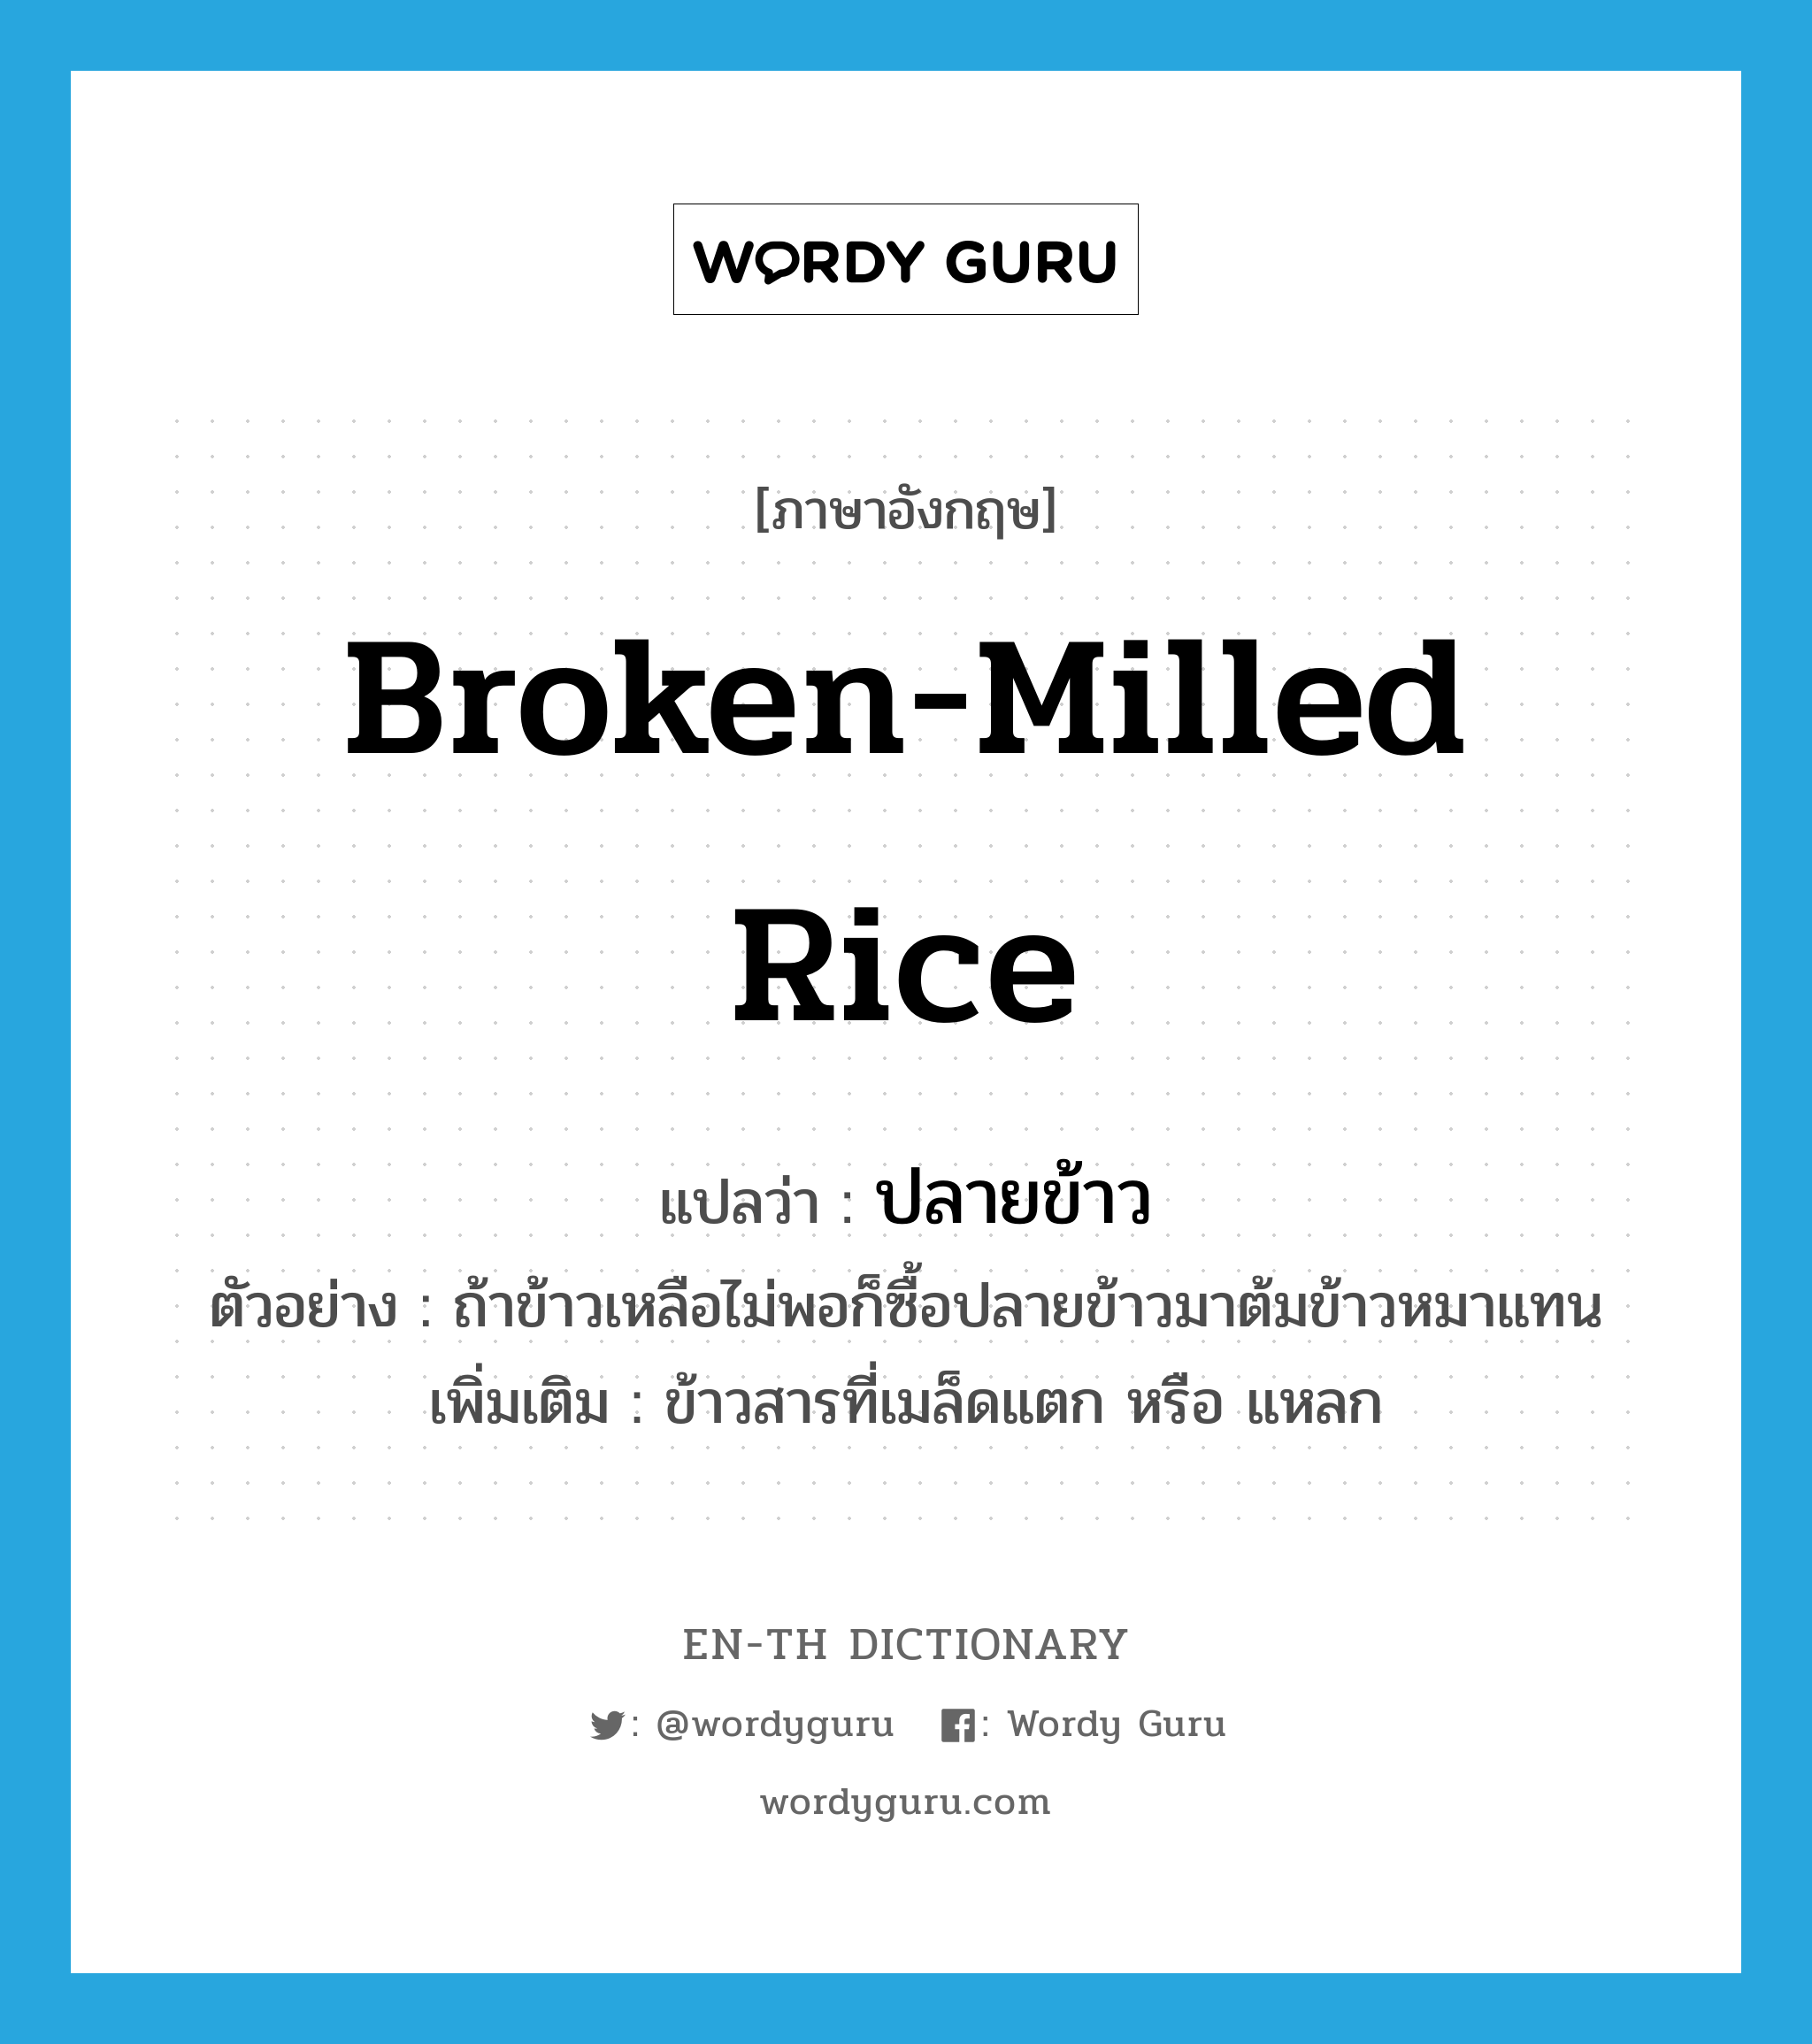 broken-milled rice แปลว่า?, คำศัพท์ภาษาอังกฤษ broken-milled rice แปลว่า ปลายข้าว ประเภท N ตัวอย่าง ถ้าข้าวเหลือไม่พอก็ซื้อปลายข้าวมาต้มข้าวหมาแทน เพิ่มเติม ข้าวสารที่เมล็ดแตก หรือ แหลก หมวด N